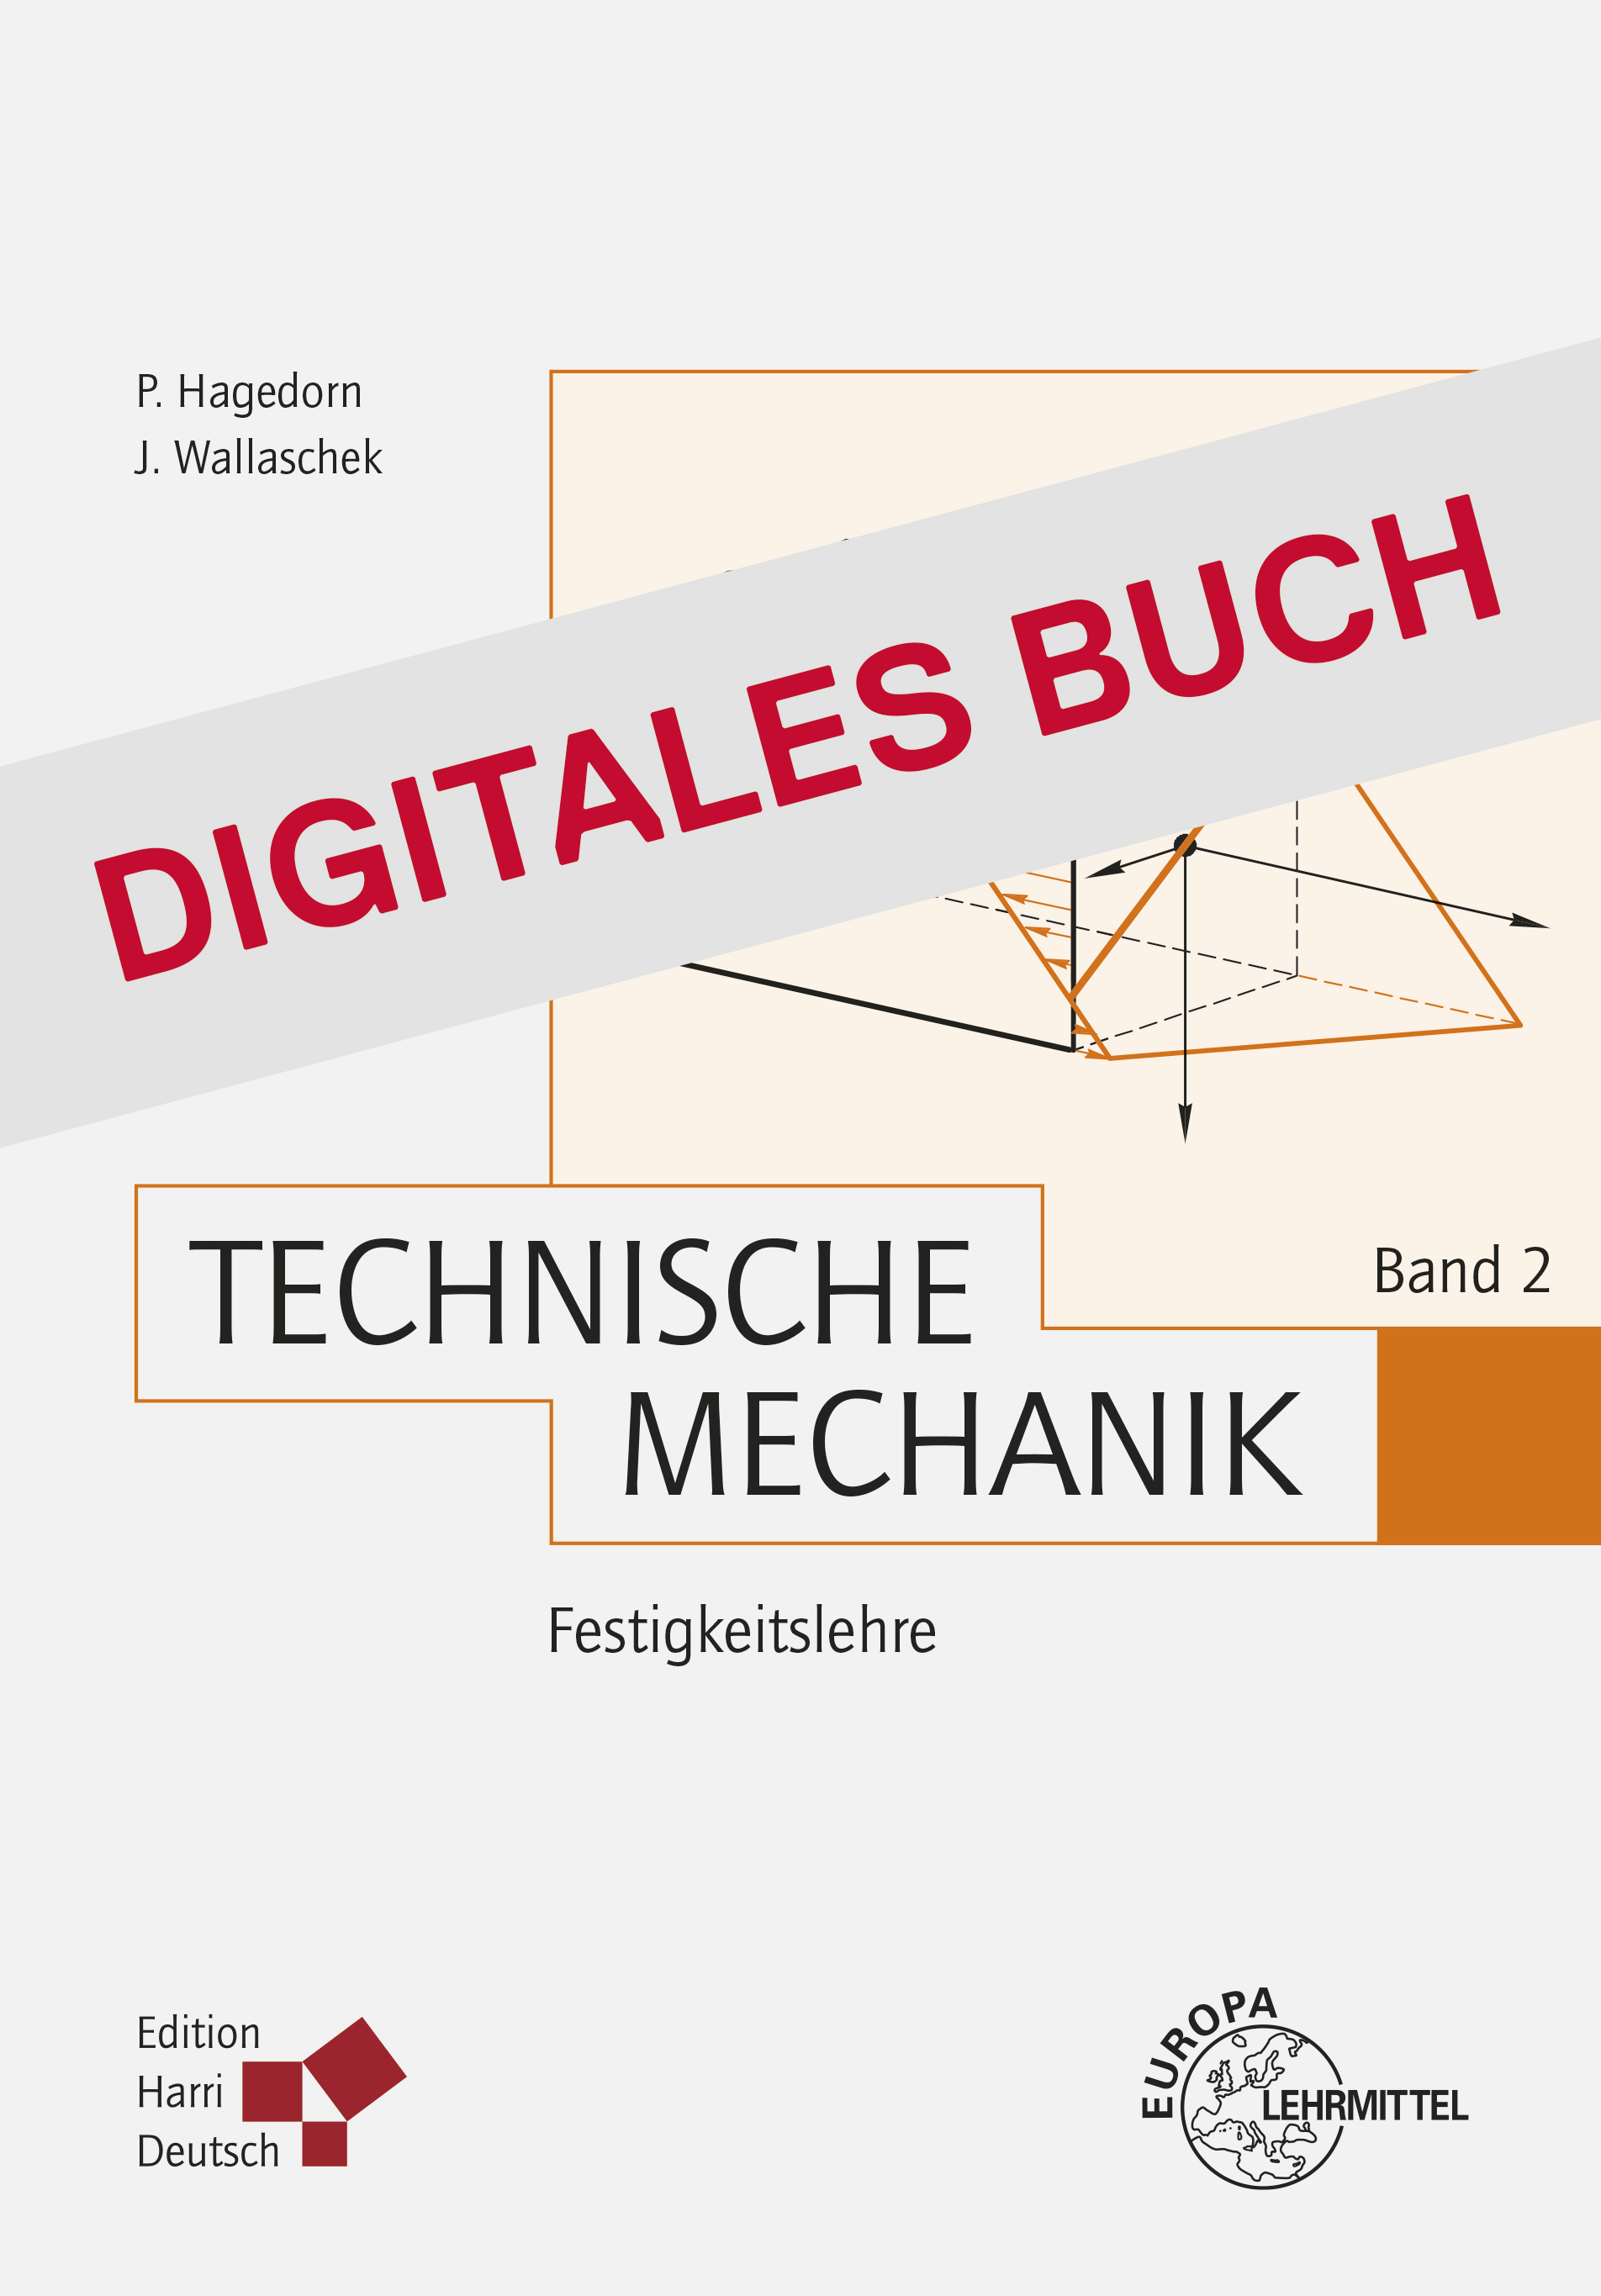 Technische Mechanik Band 2: Festigkeitslehre - Digitales Buch